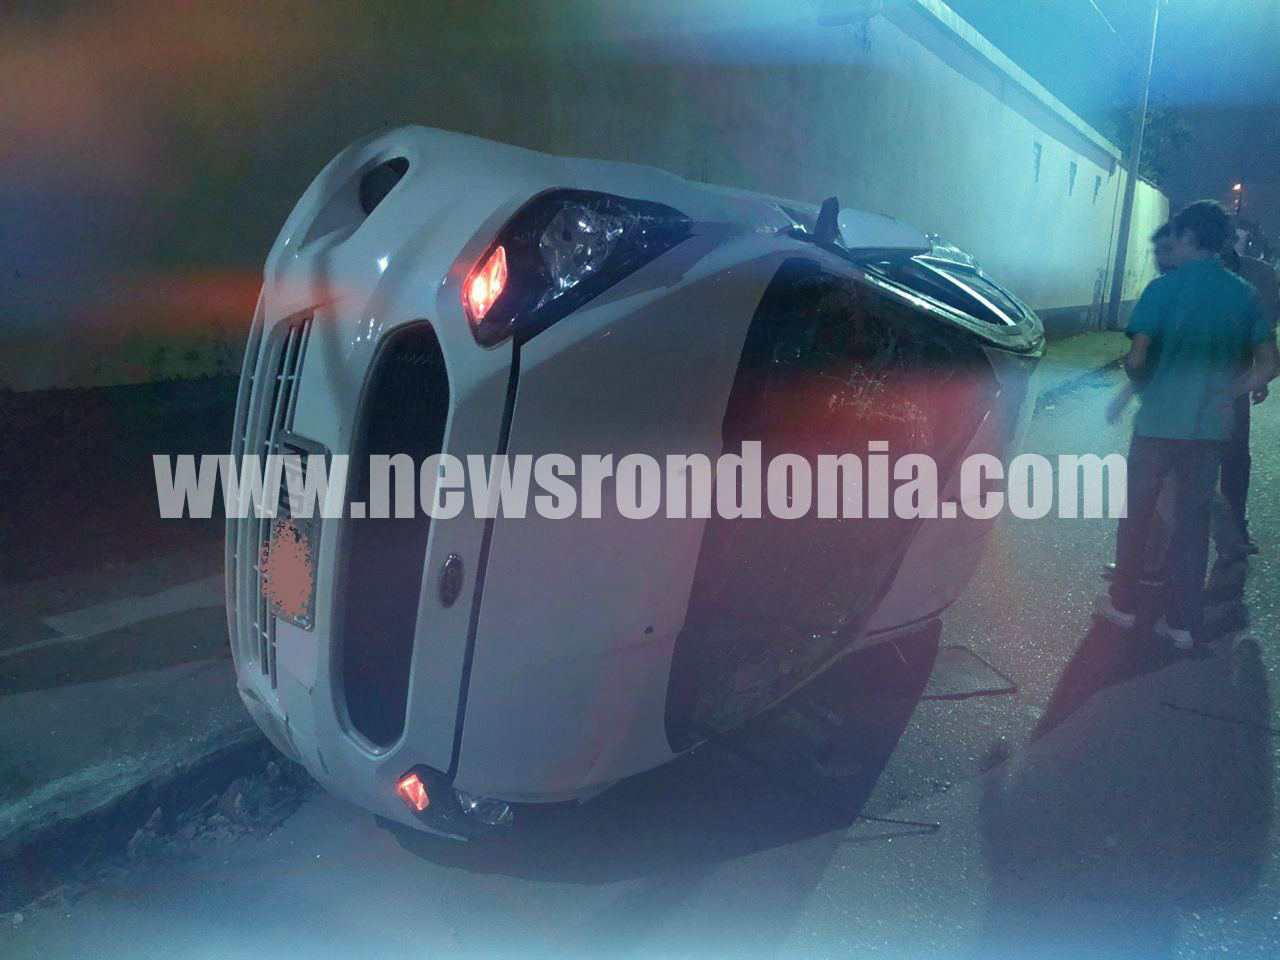 Motorista avança preferencial e foge após atingir carro na avenida sete de setembro em Porto Velho - News Rondônia